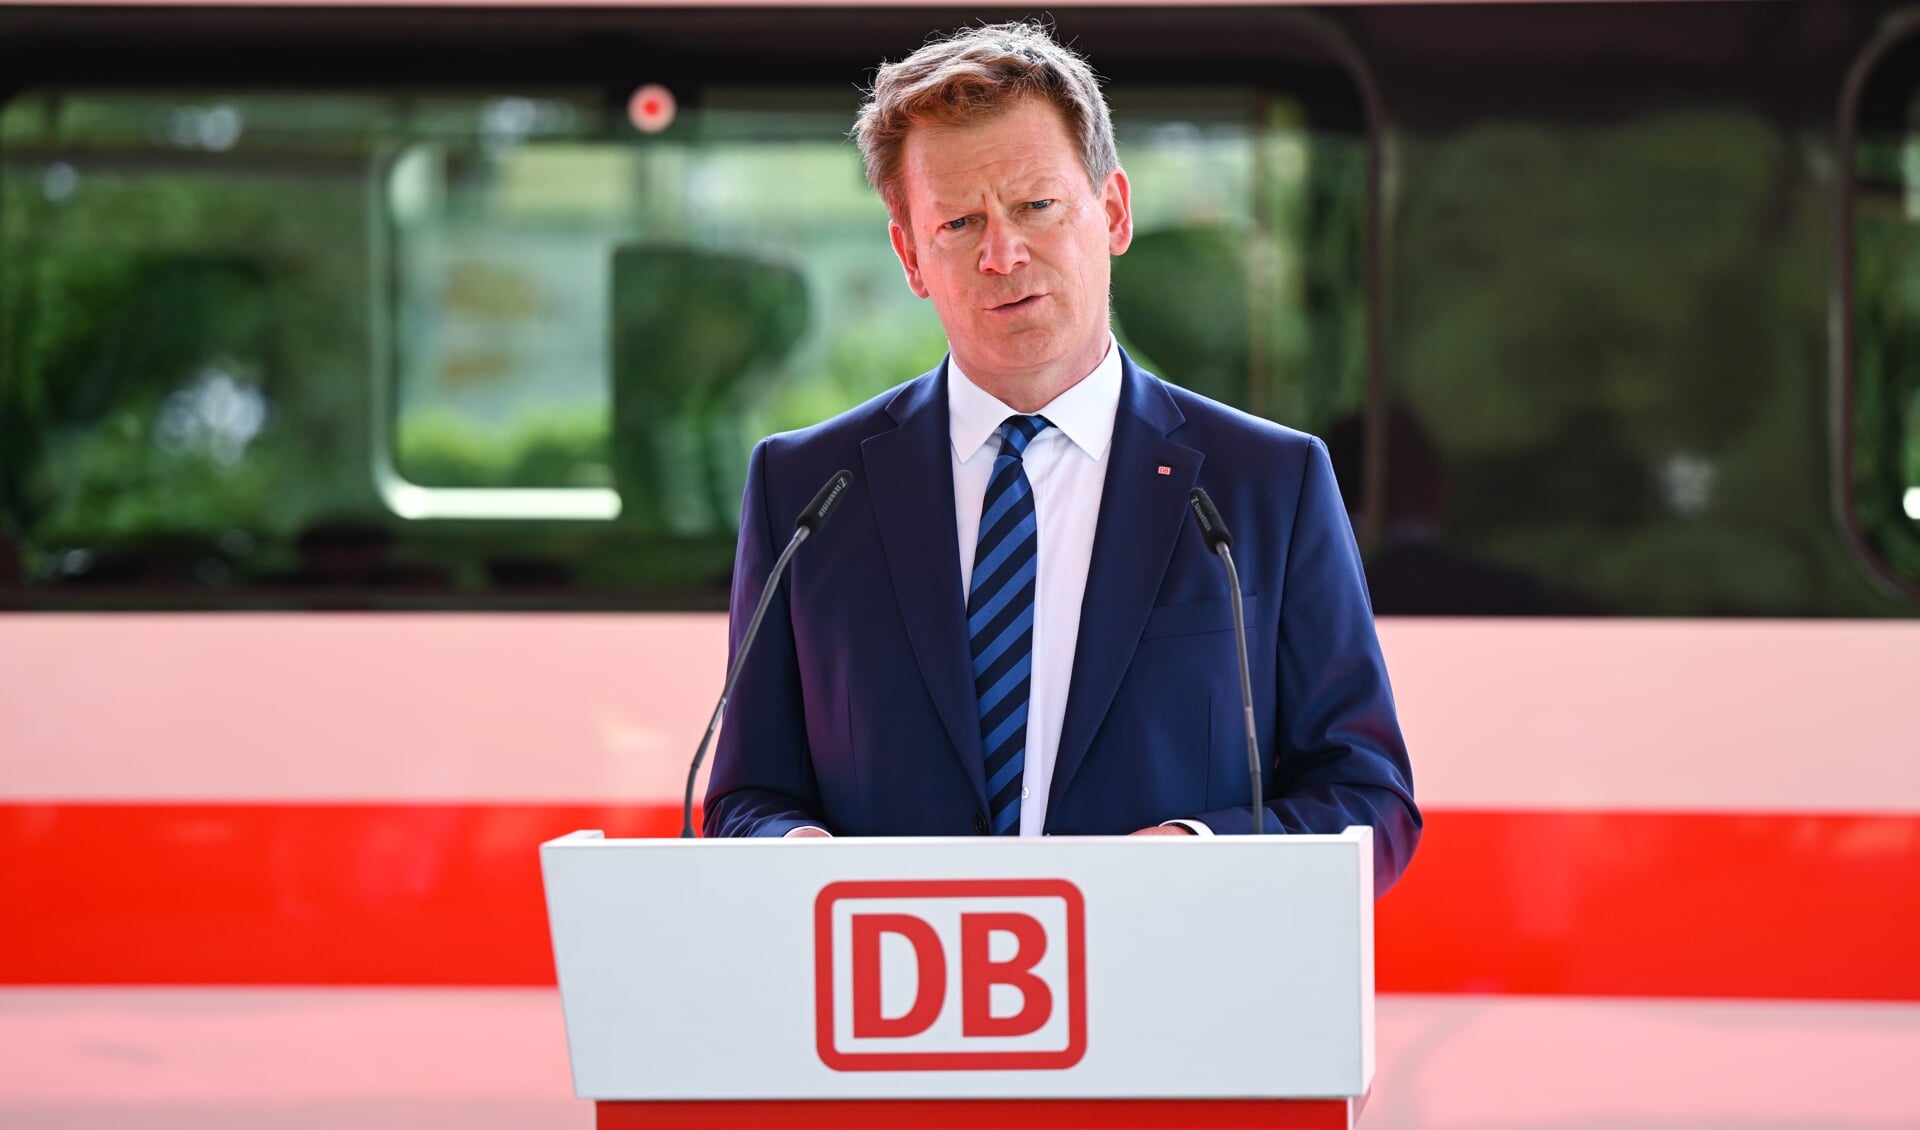 Vi har ikke plads til diskriminering og racisme, fastslår Richard Lutz, der er administrerende direktør for Deutsche Bahn. Foto: 